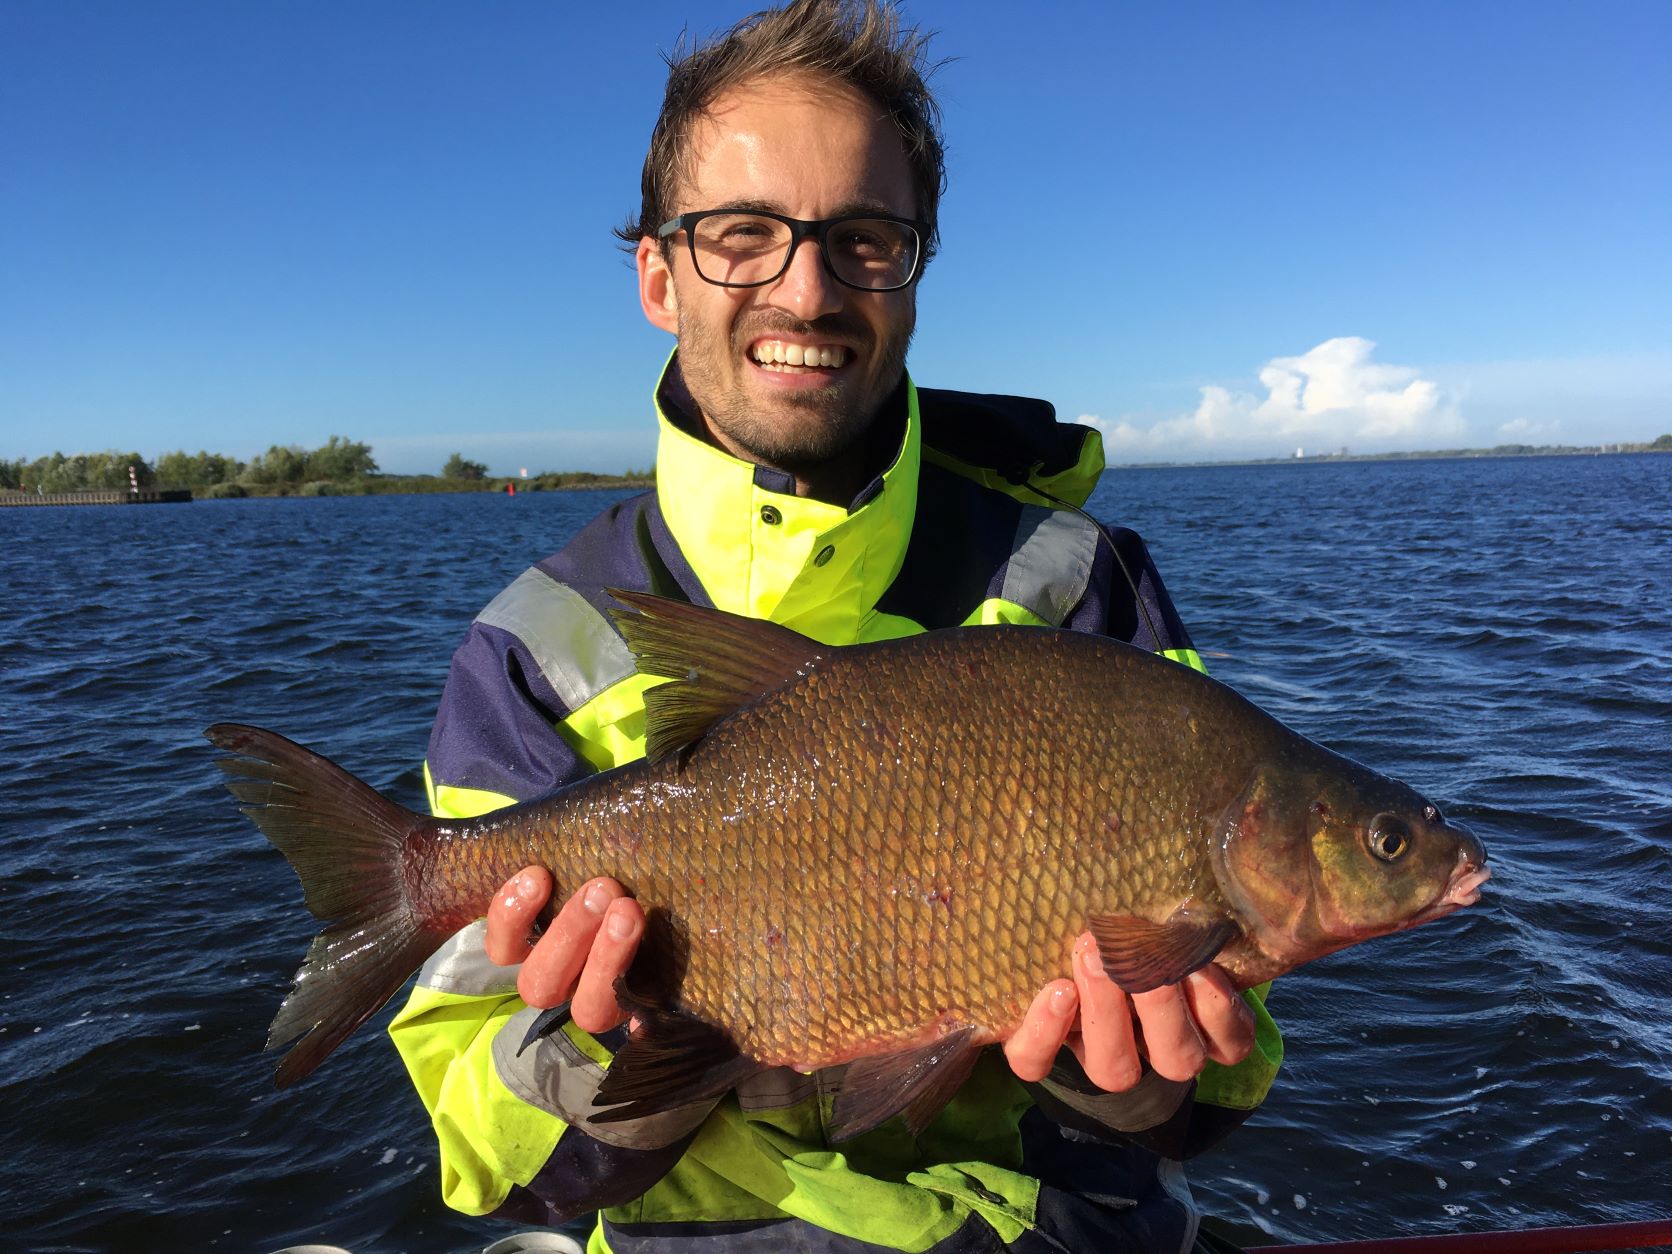 Noordoosten Calamiteit winnen Sportvisserij Nederland - Brasem, terug van nooit weggeweest